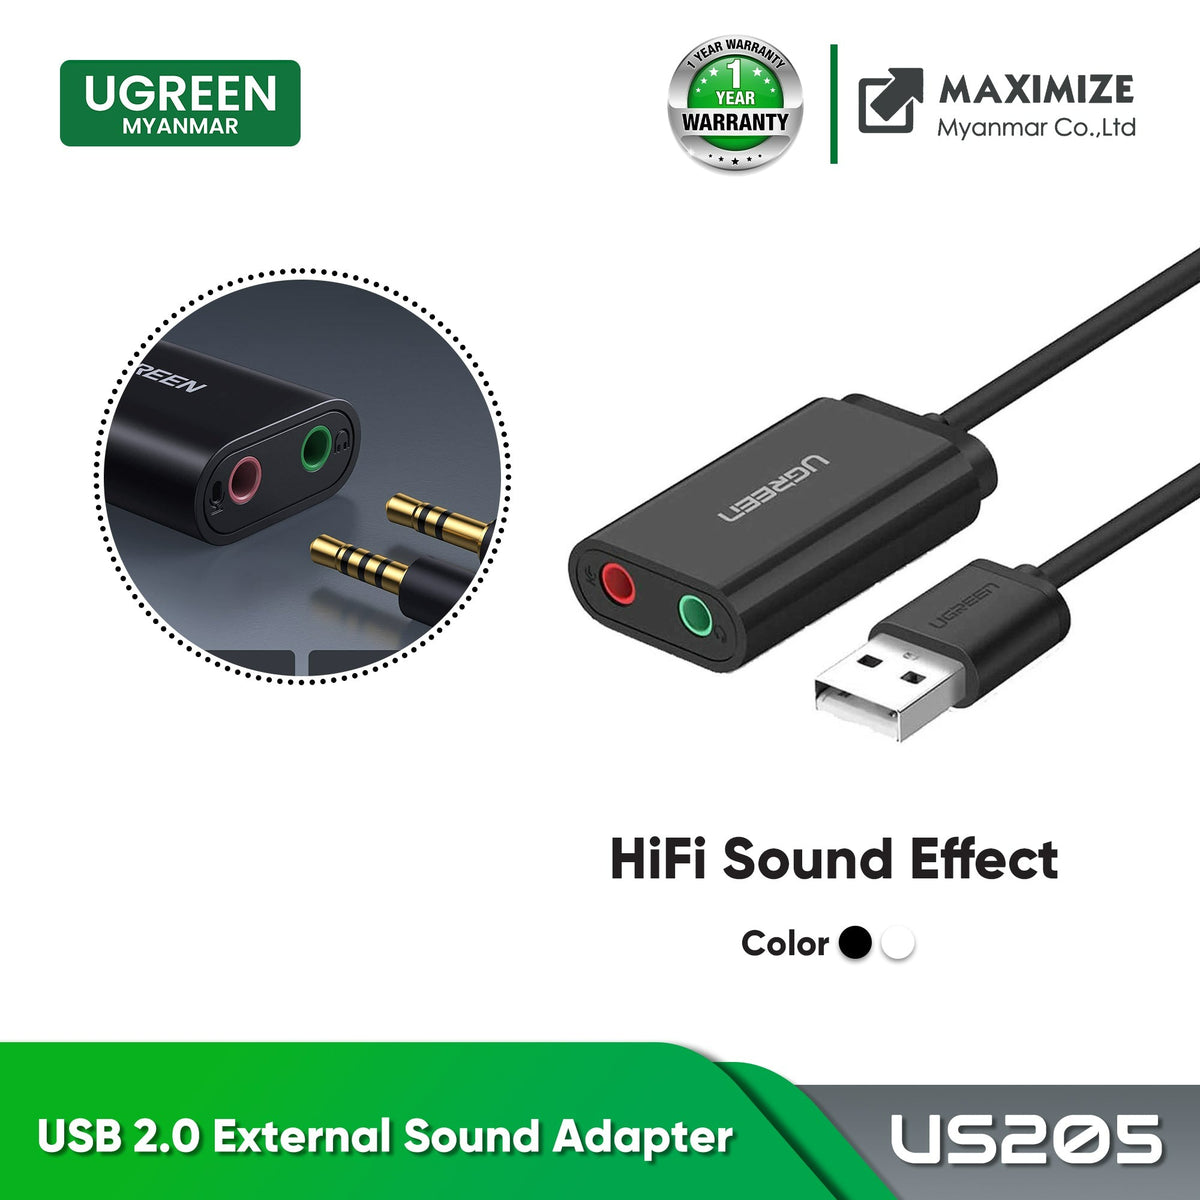 UGREEN USB 2.0 EXTERNAL SOUND ADAPTER (US205) - BLACK